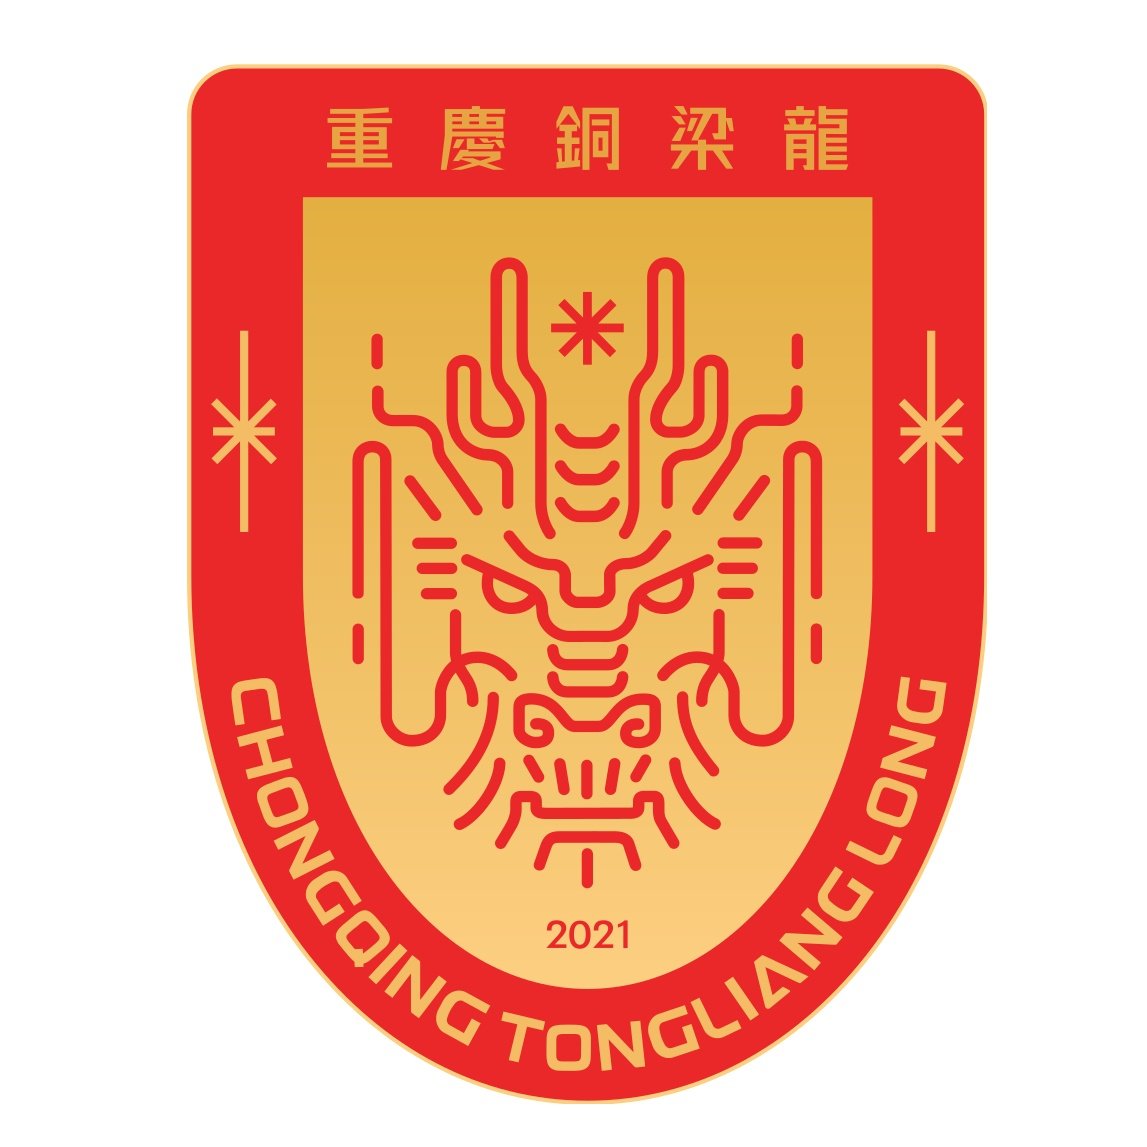 >Chongqing Tonglianglong